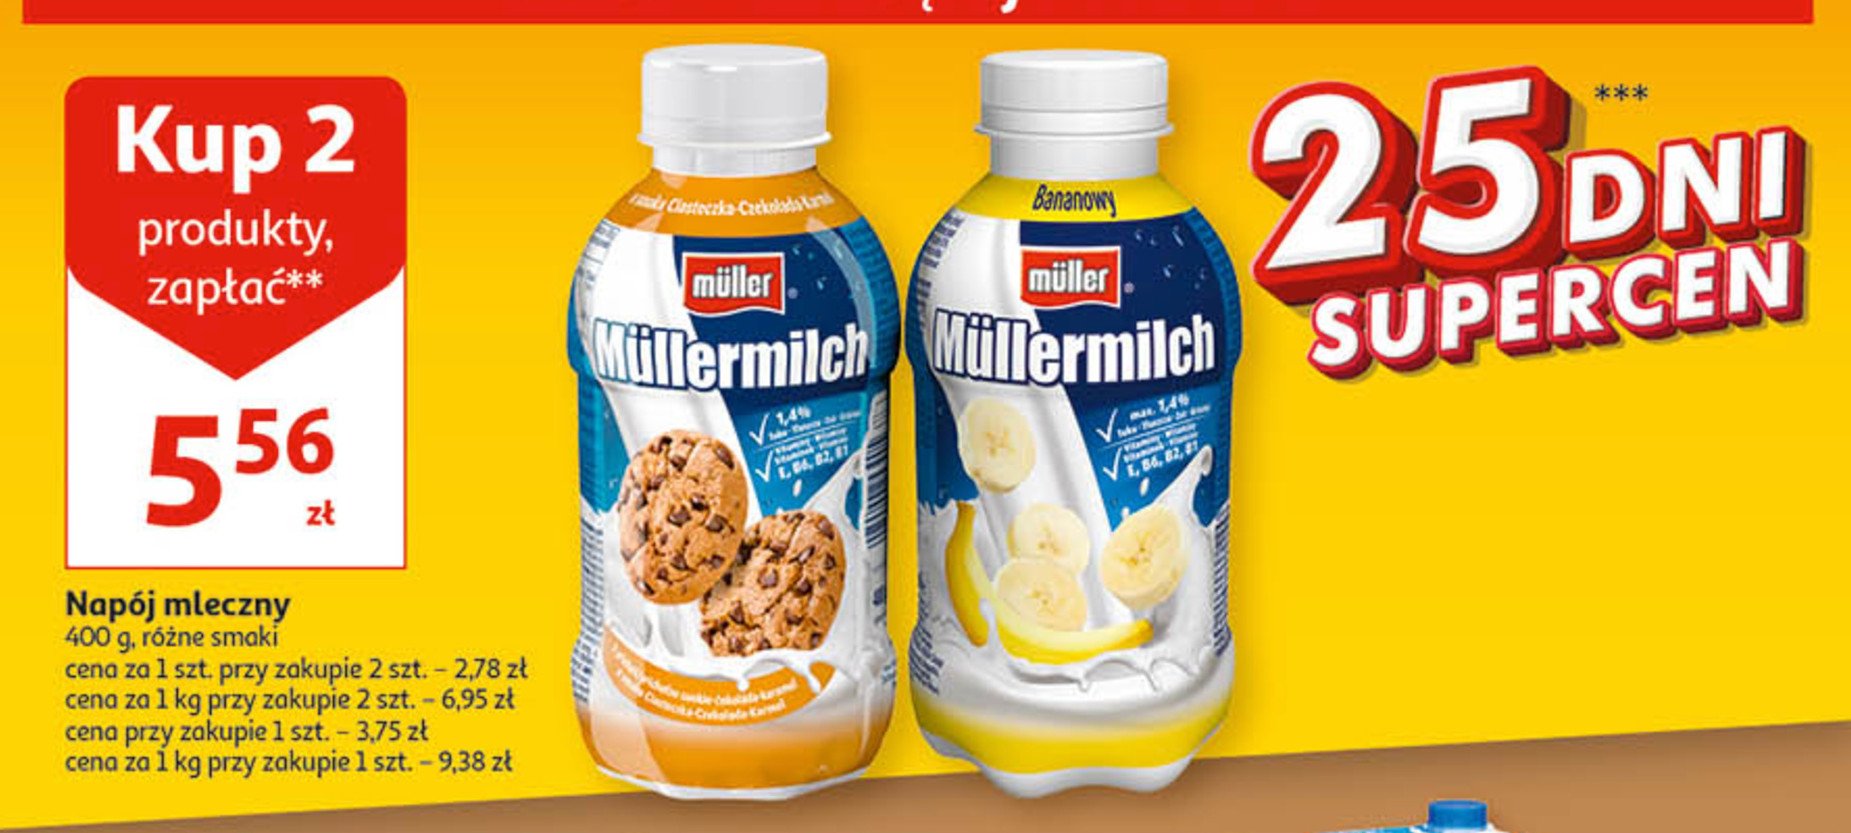 Napój mleczny banan Mullermilch promocja